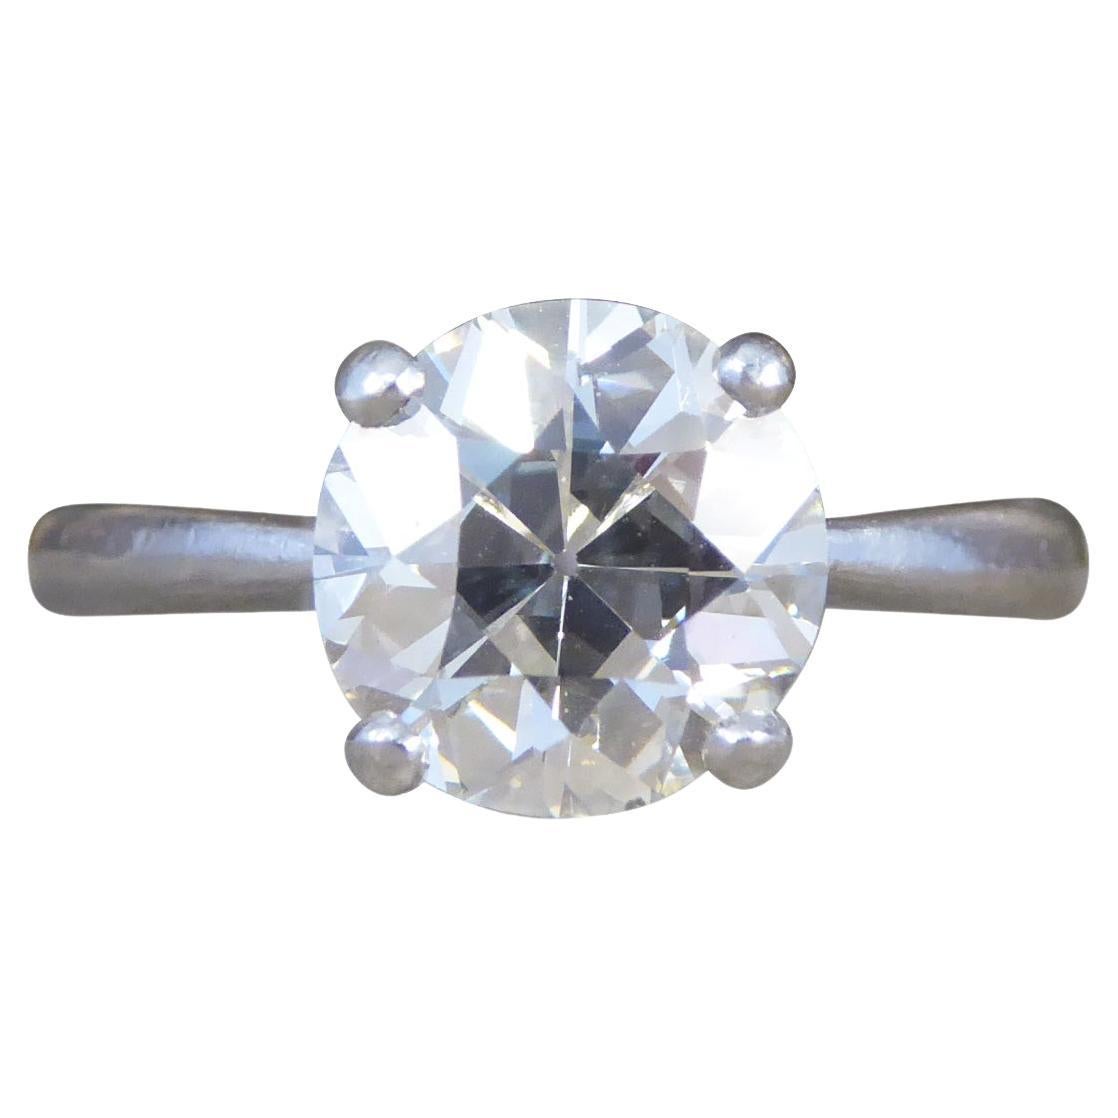 2.55ct Old European Cut Diamond Solitaire Ring in Platinum